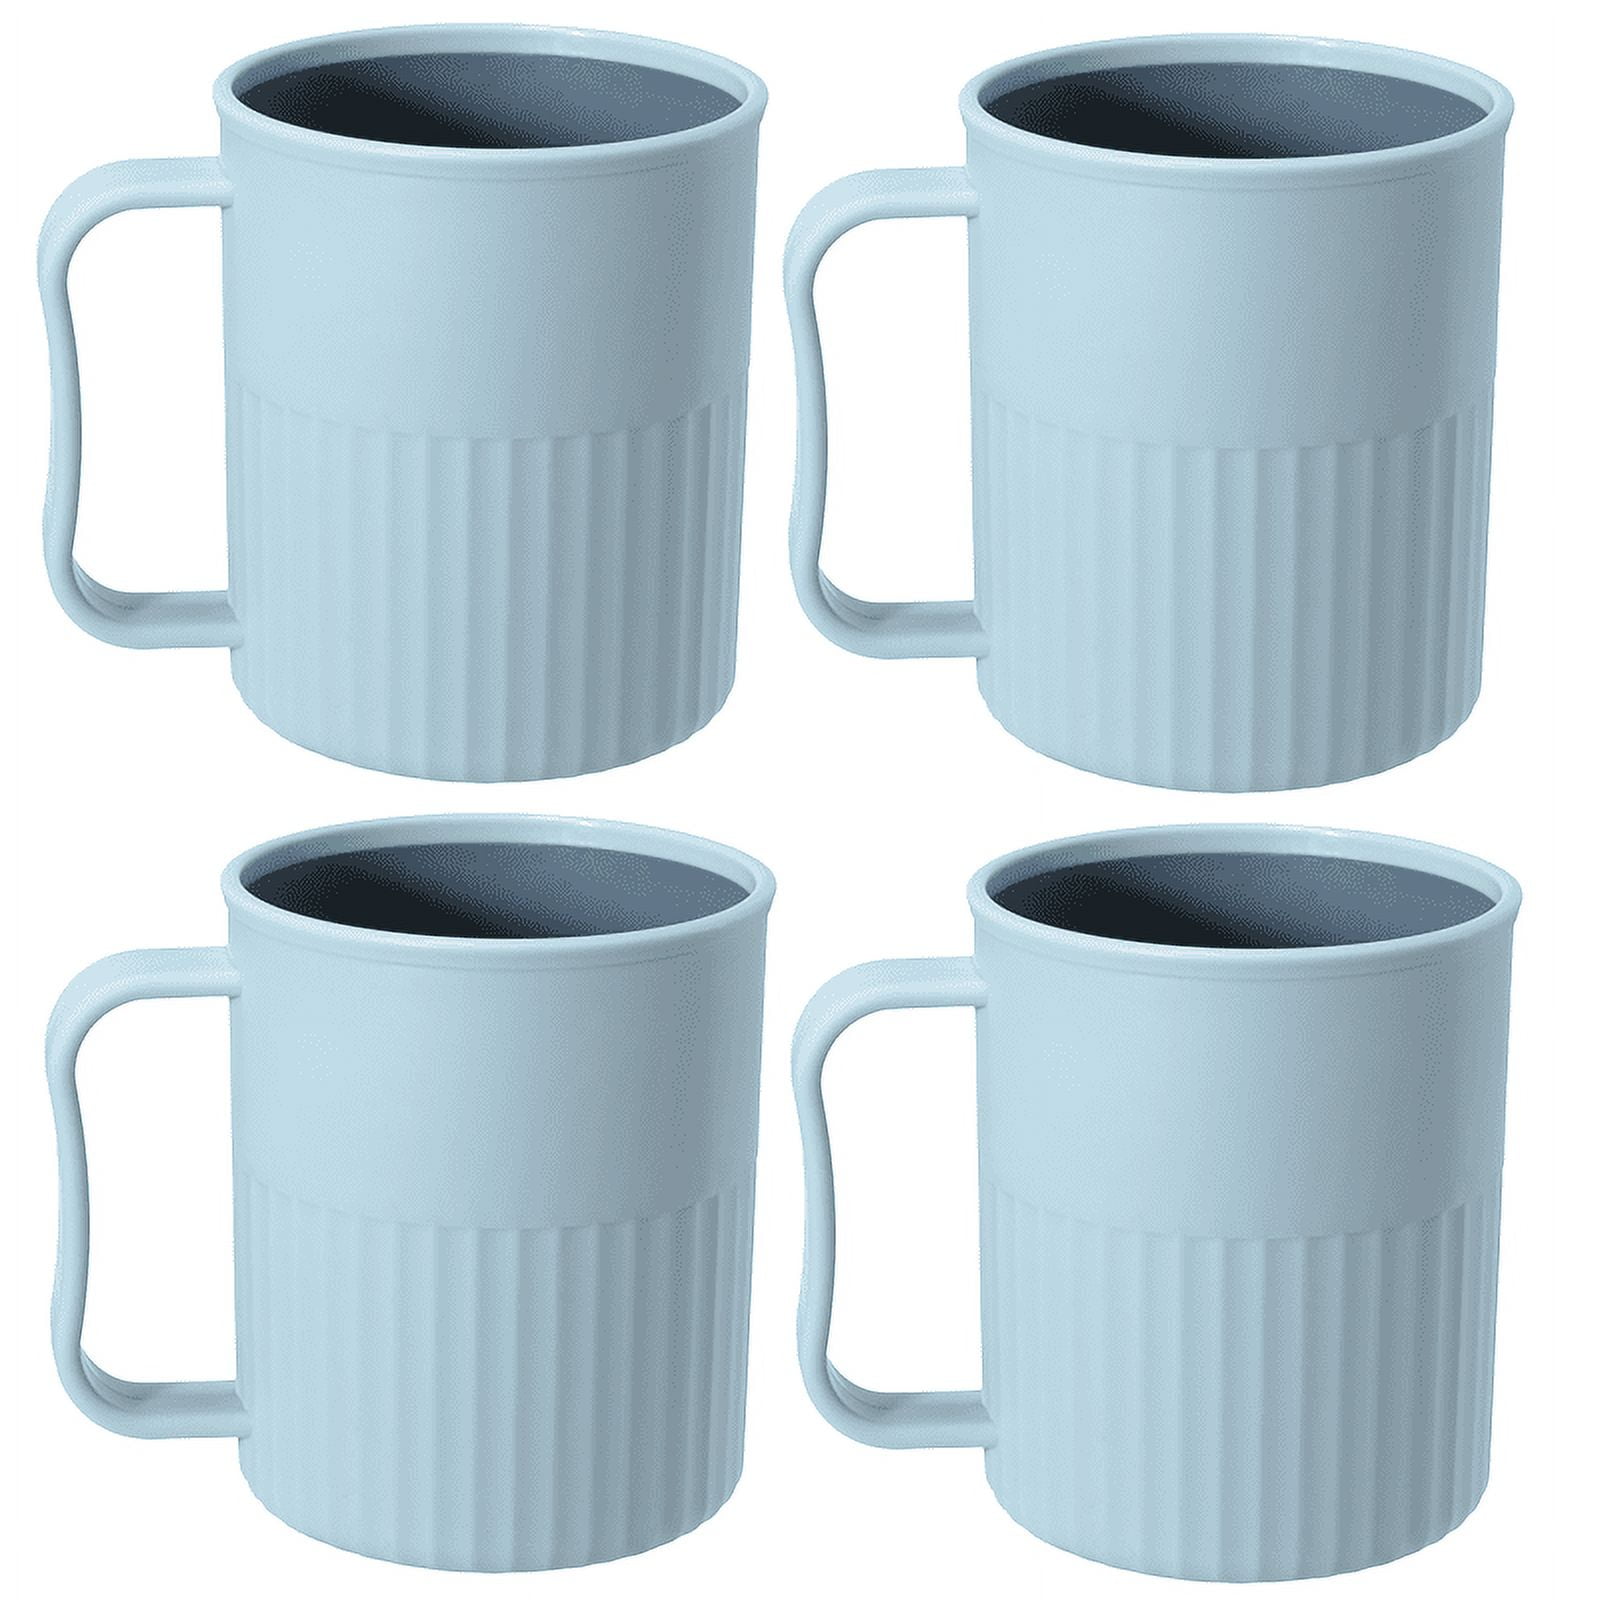 Okuna Outpost 6-Pack 12oz Wheat Straw Mugs, Dishwasher Safe Unbreakable  Coffee Mug Set with Handles,…See more Okuna Outpost 6-Pack 12oz Wheat Straw